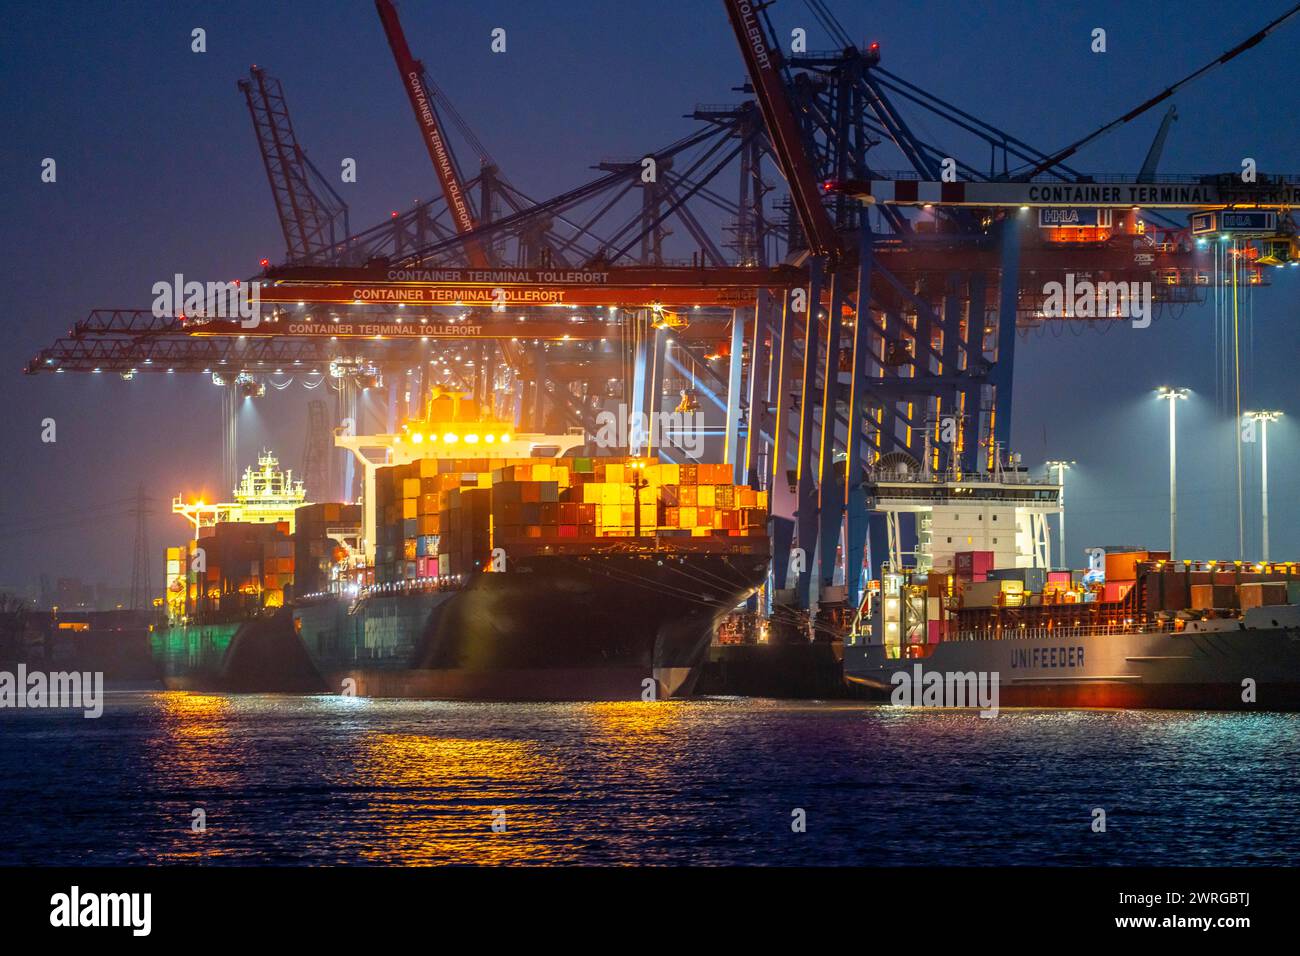 Containerterminal Tollerort, Containerschiffe werden be- und entladen, einer von 4 Containerterminals im Hamburger Hafen Stockfoto